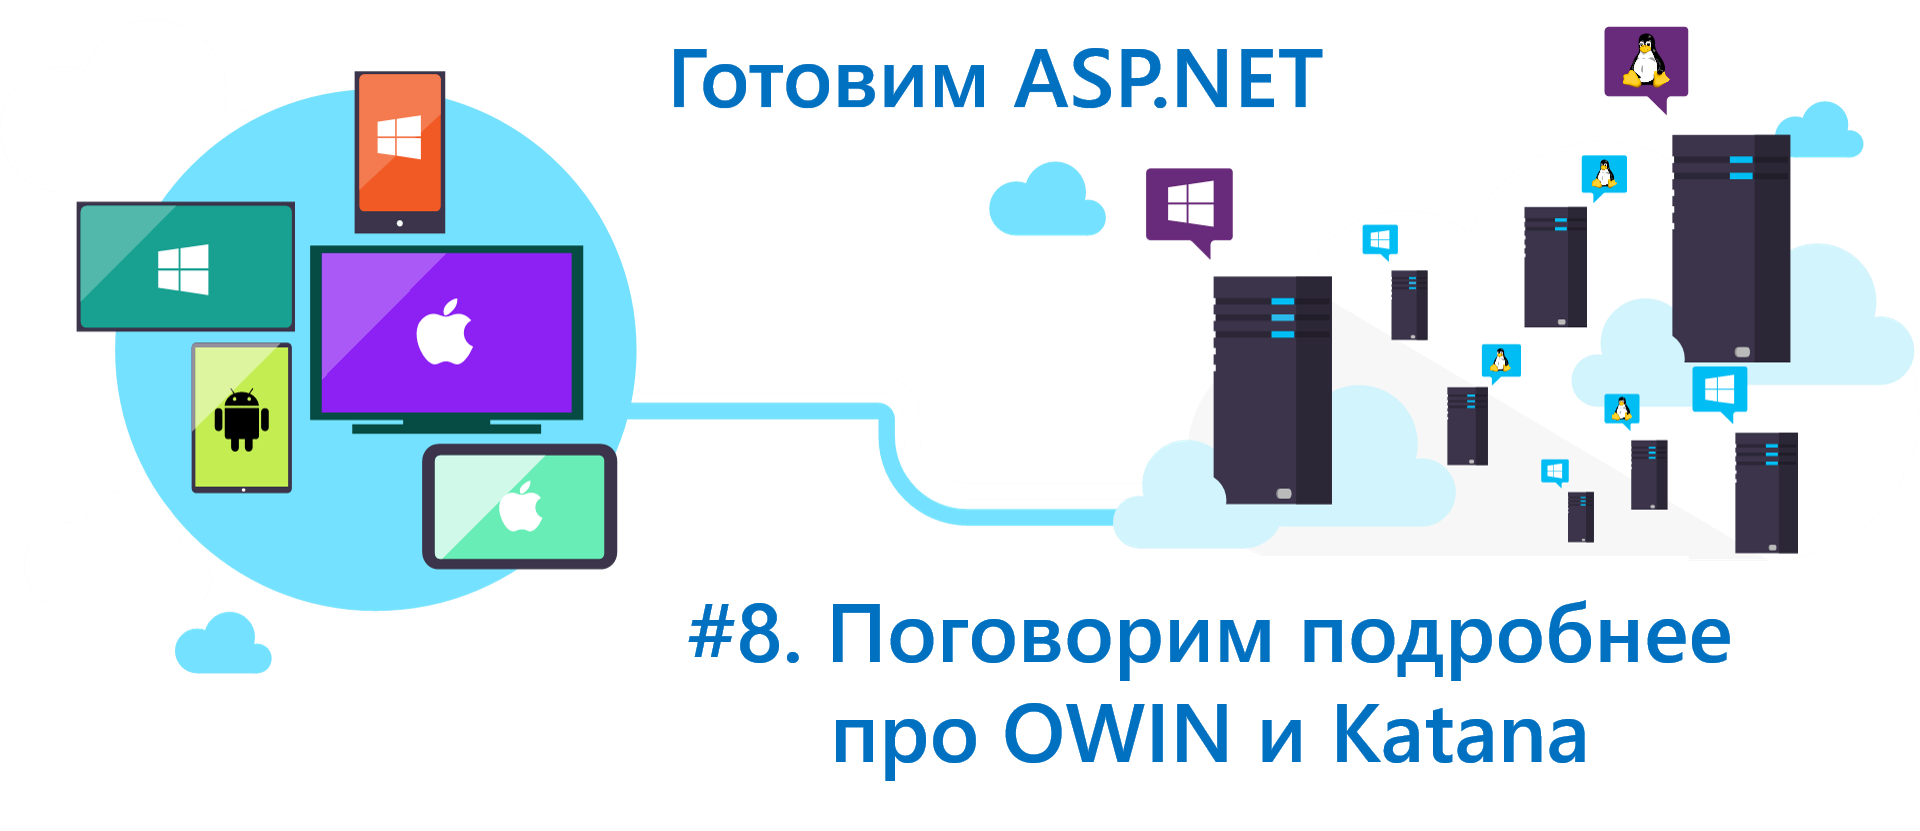 Готовим ASP.NET Core: поговорим подробнее про OWIN и Katana - 1